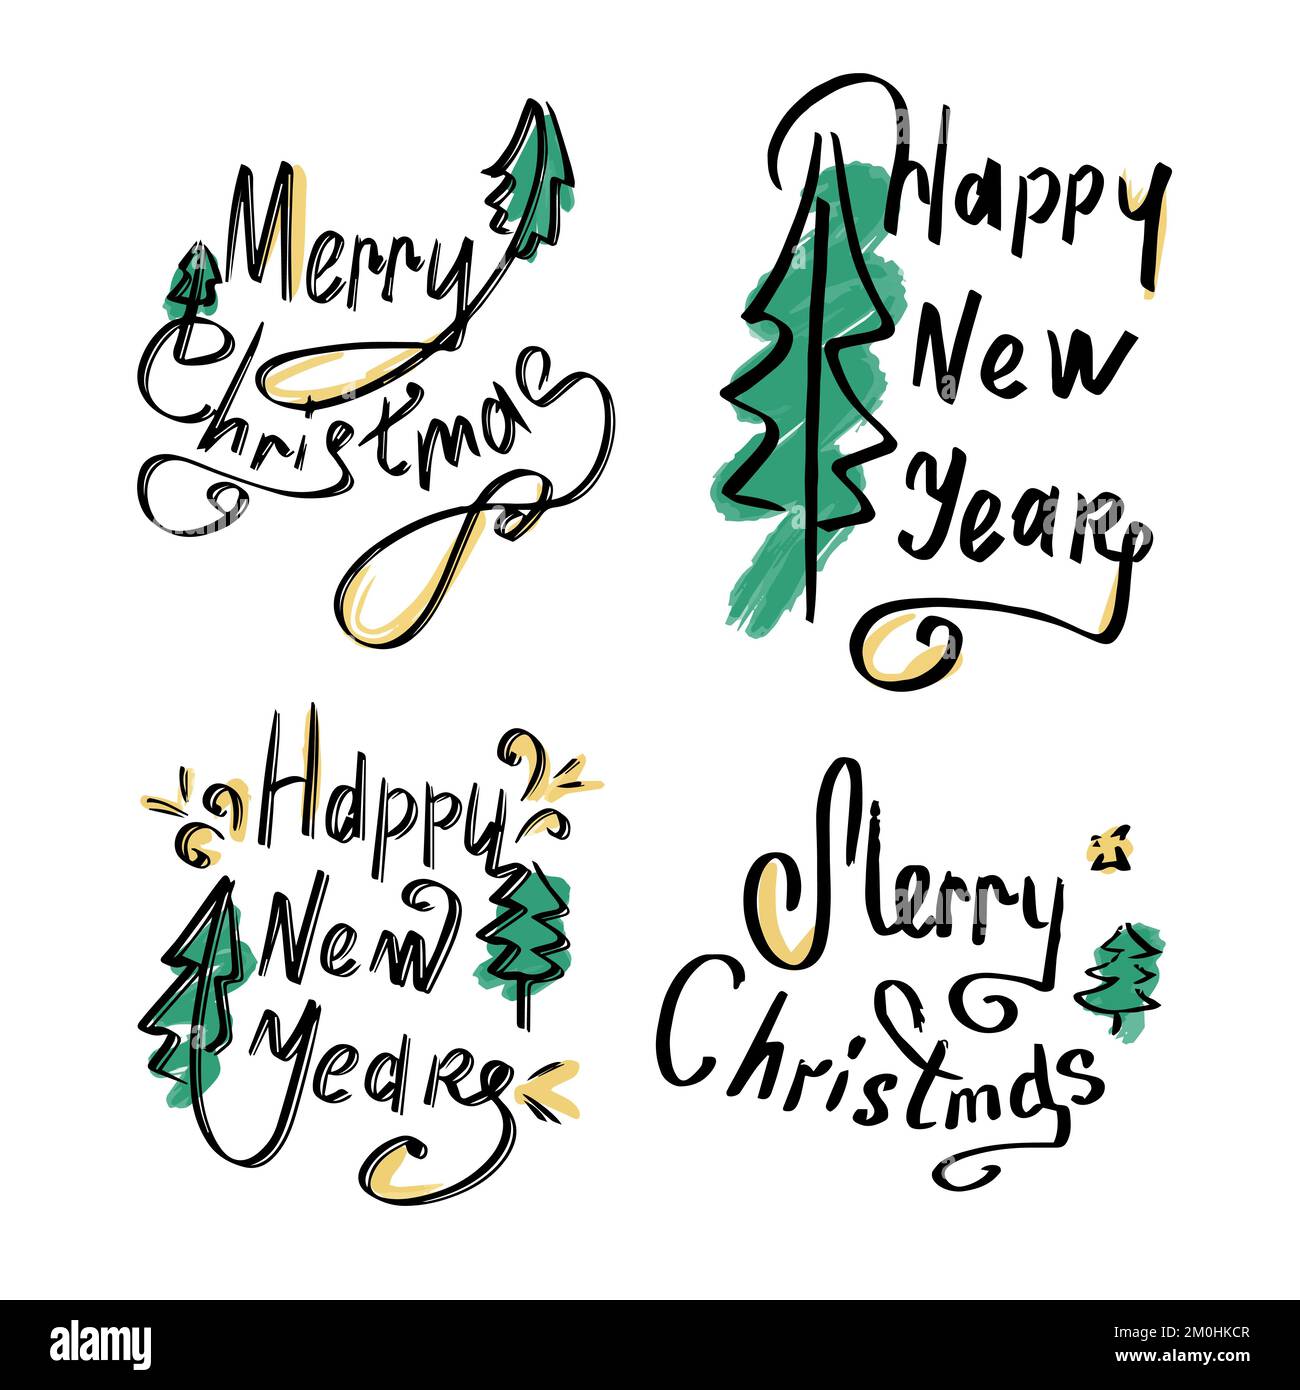 Ein Satz kalligraphischer Aufschriften. Frohes neues Jahr und Frohe Weihnachten. Wunderschöne schwarze Schrift mit Wirbeln und farbigen Elementen. Konstruktionsvorlage für Stock Vektor